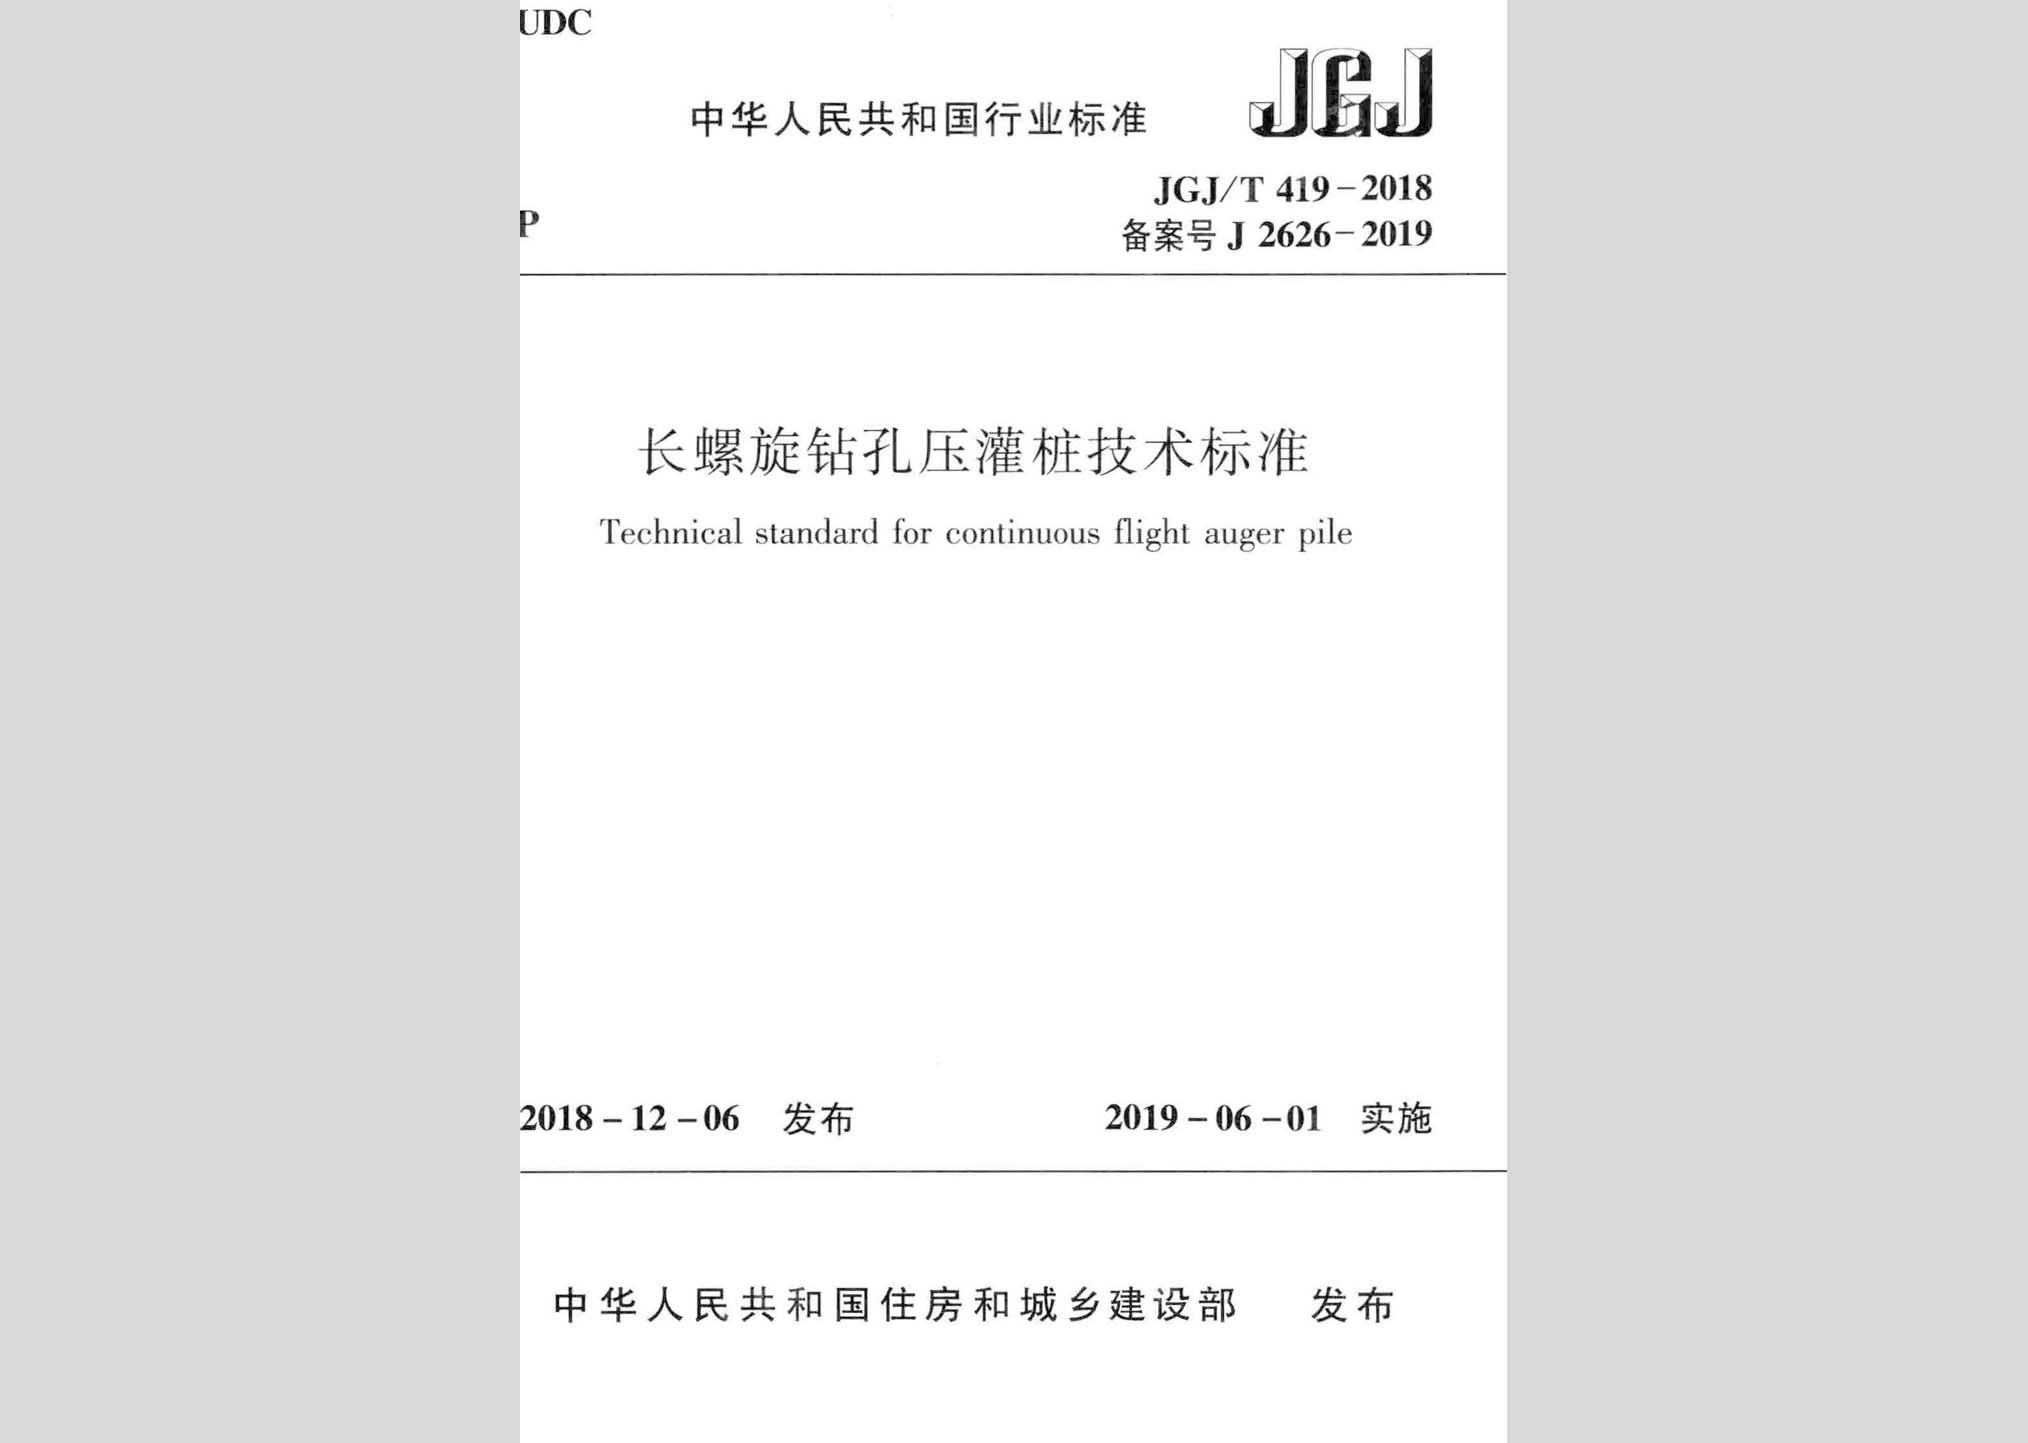 JGJ/T419-2018：长螺旋钻孔压灌桩技术标准